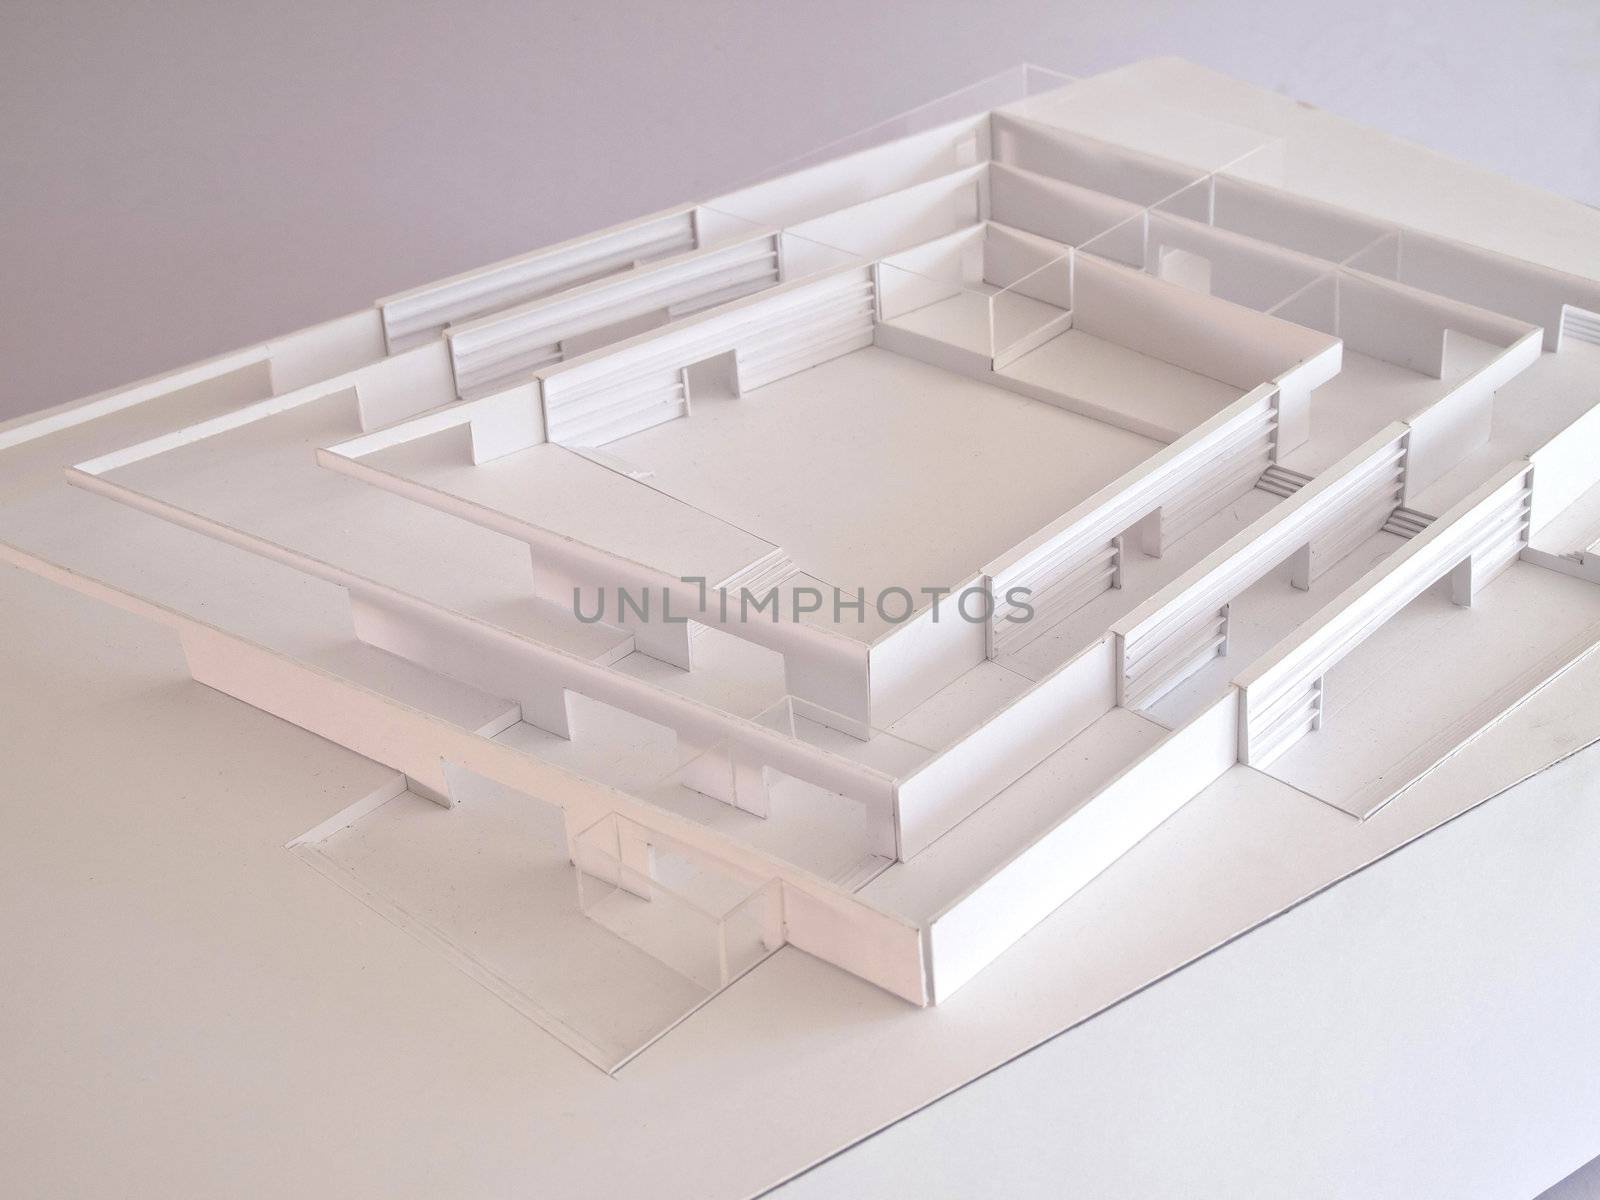 conceptual architectural model